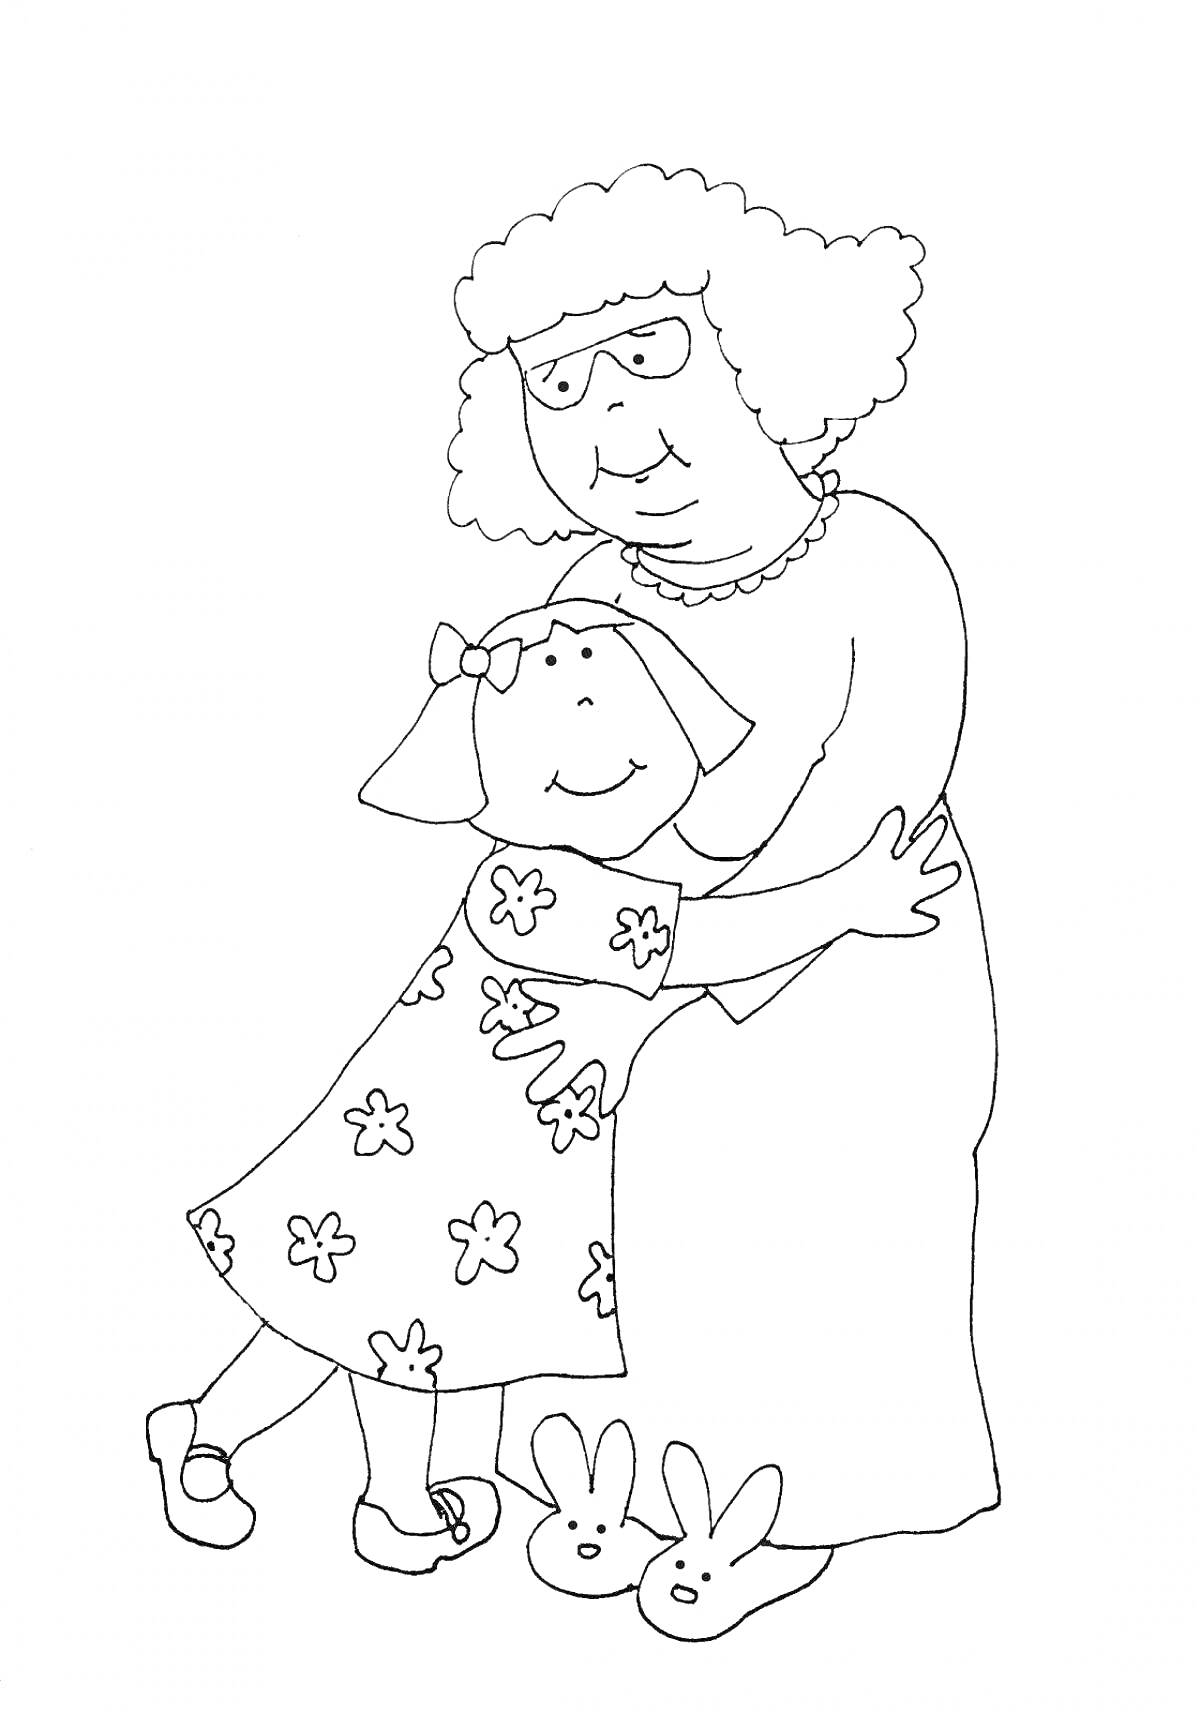 На раскраске изображено: Бабушка, Внучка, Объятия, Очки, Платье, Цветочный узор, Туфли, Тапочки, Семья